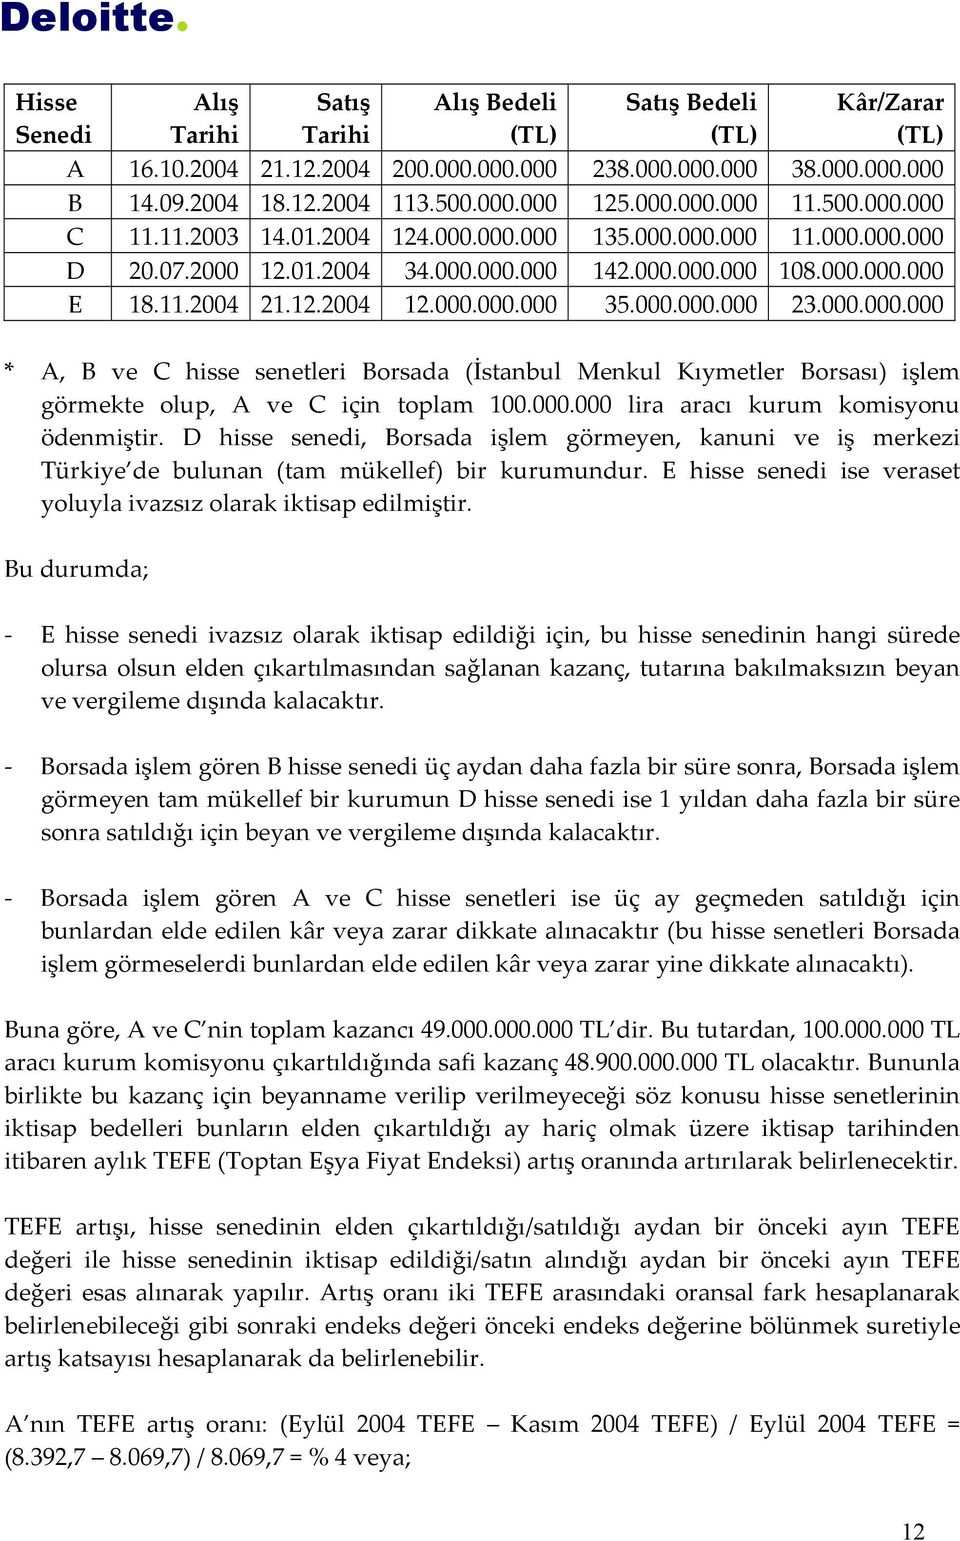 000.000.000 23.000.000.000 * A, B ve C hisse senetleri Borsada (İstanbul Menkul Kıymetler Borsası) işlem görmekte olup, A ve C için toplam 100.000.000 lira aracı kurum komisyonu ödenmiştir.